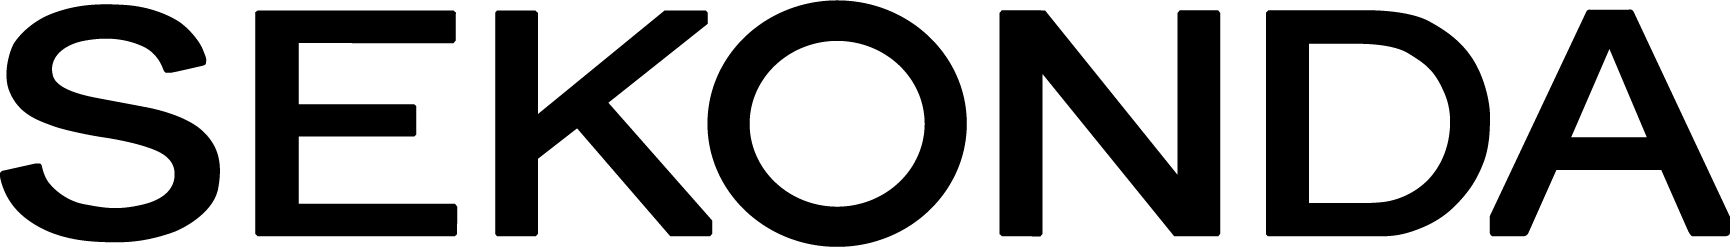 sekonda logo